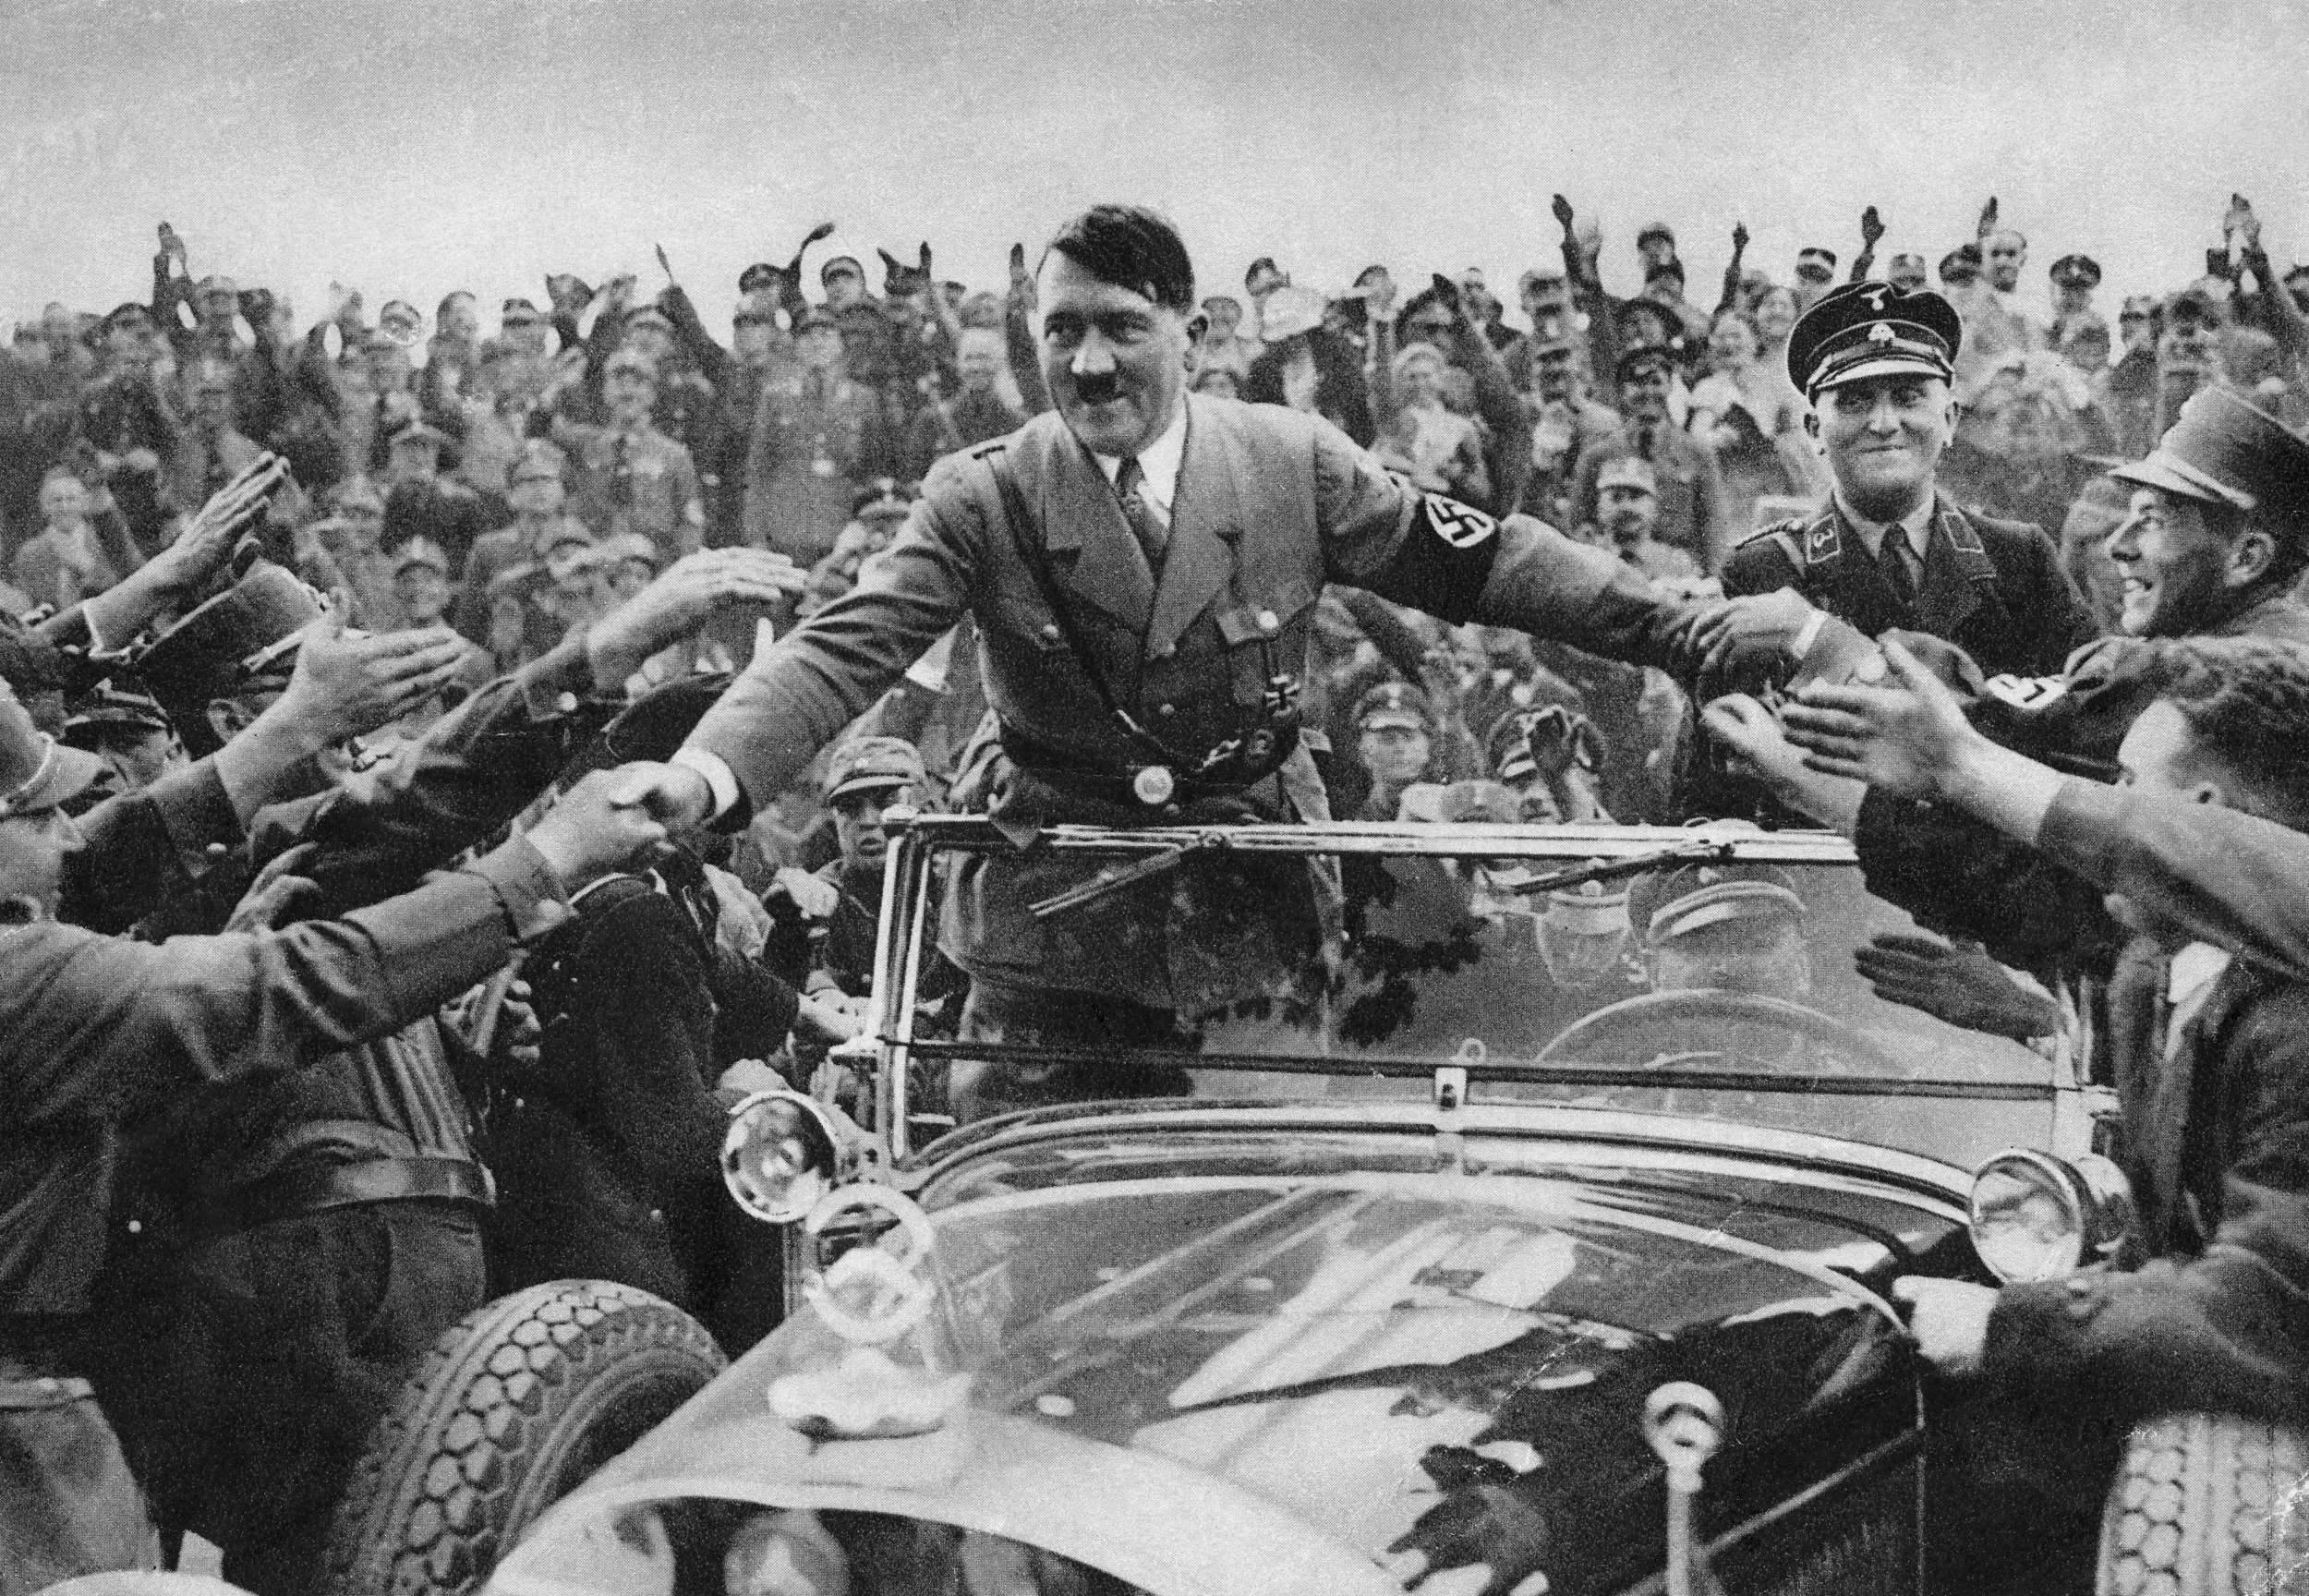 Hitler en un coche reuniendo a la gente hacia su visión del mundo en la Alemania nazi, prueba de su carismático liderazgo